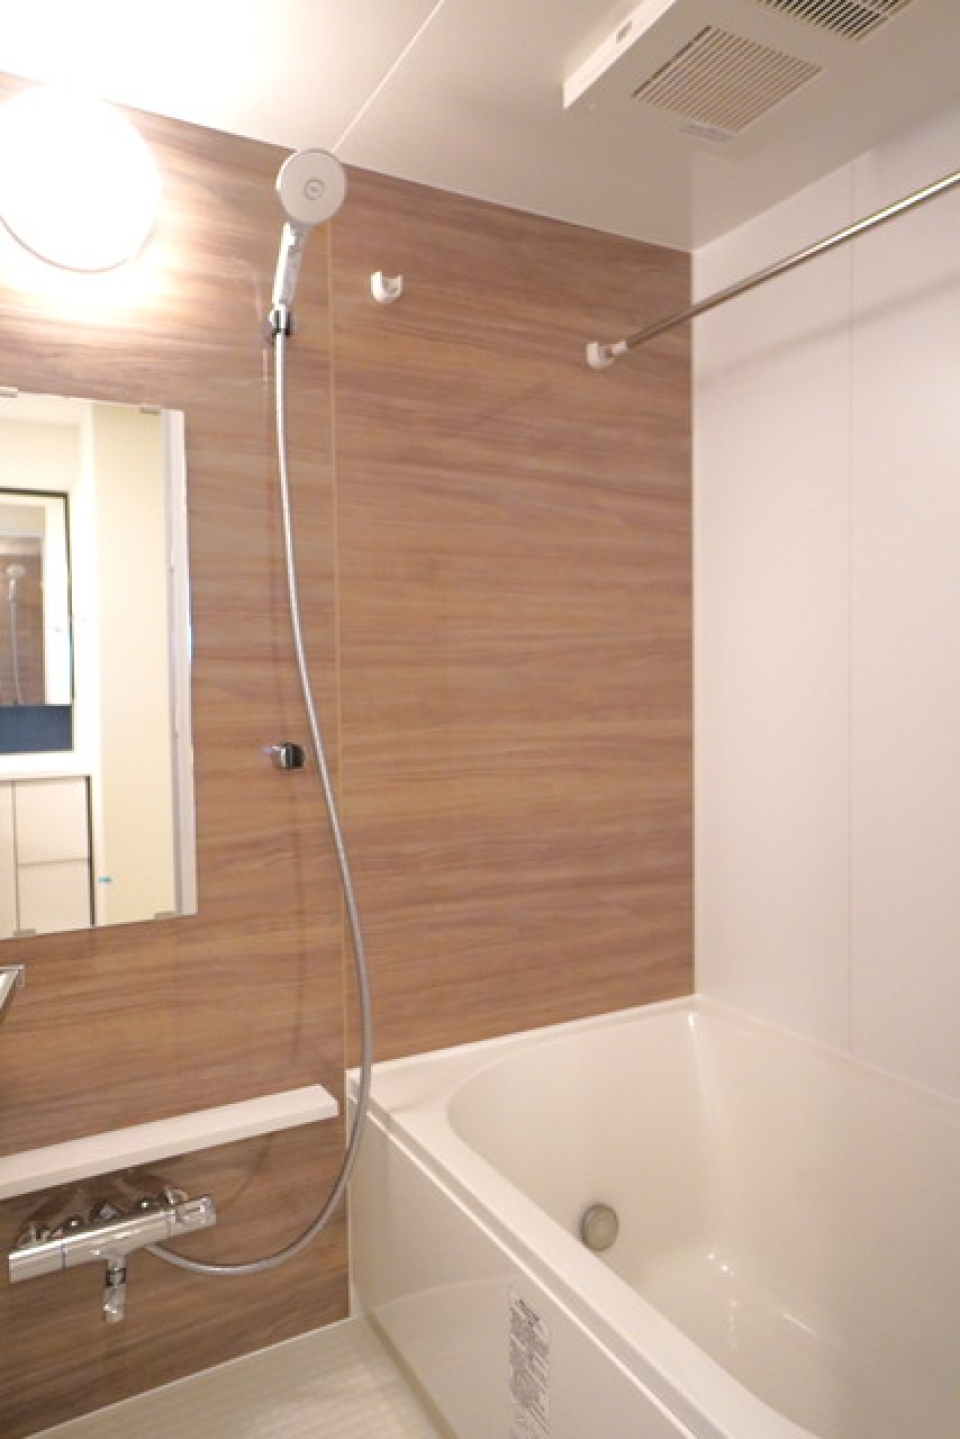 ナチュラルな木目調のパネルが導入されている浴室です。※写真は同タイプ住戸です。